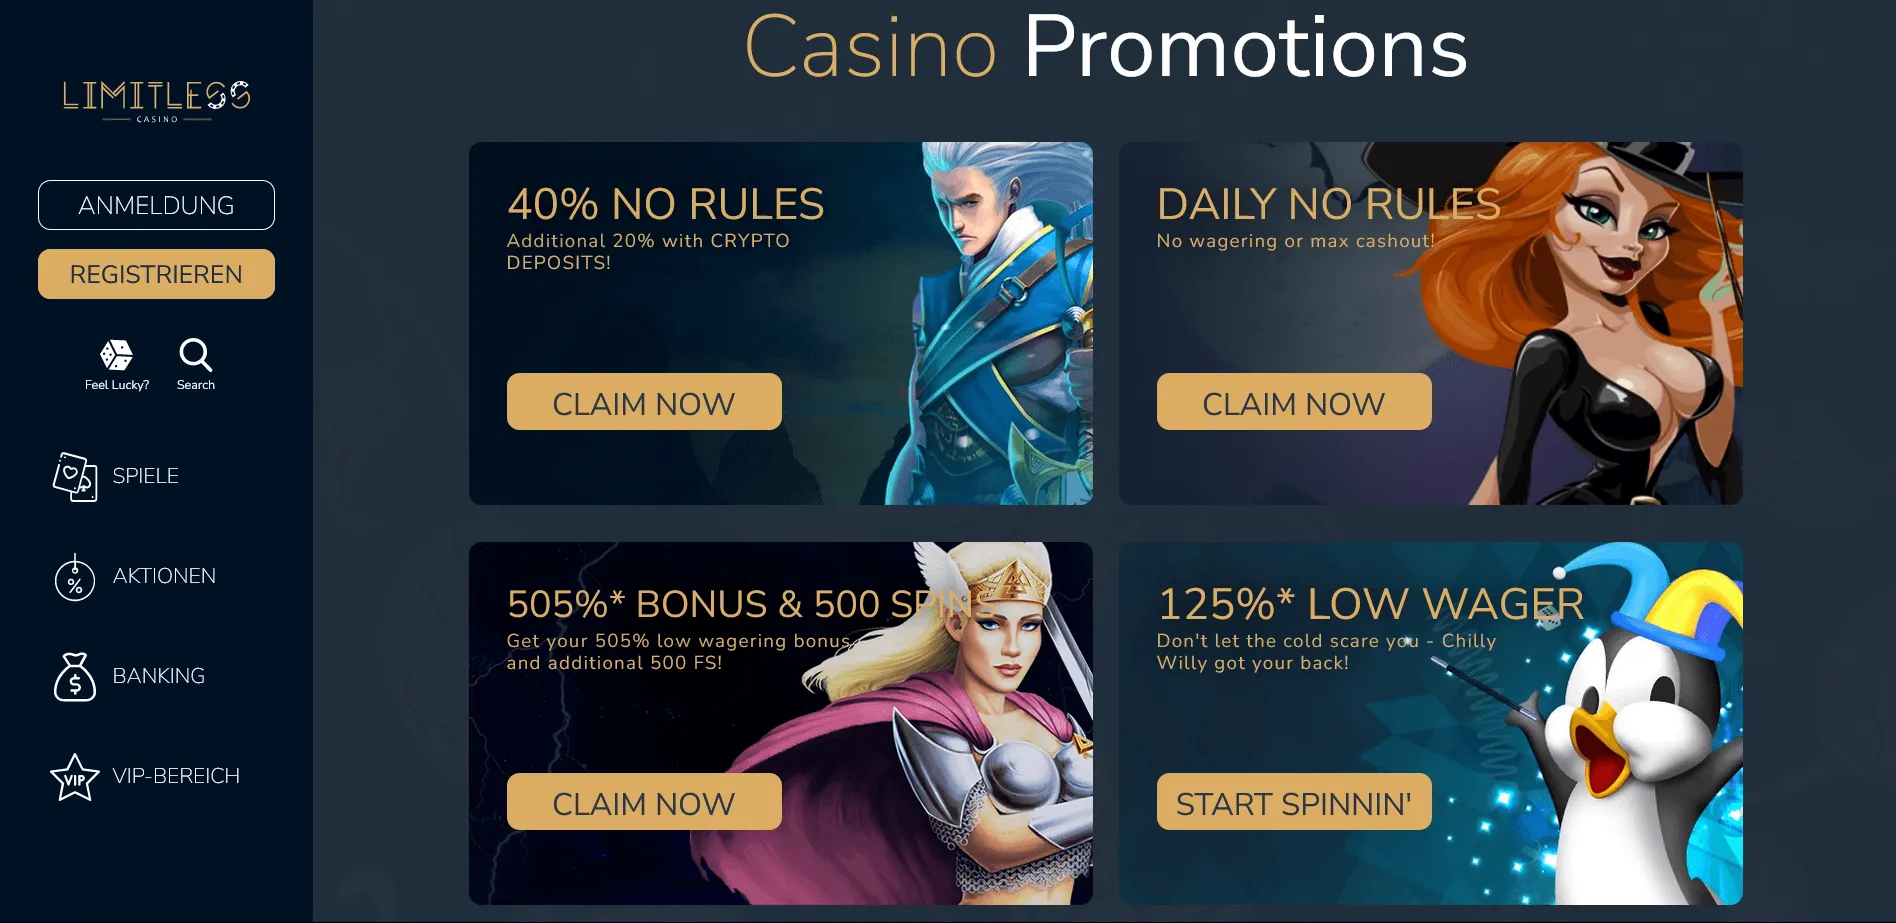 Welkomstbonus en Promoties bij Limitless Casino